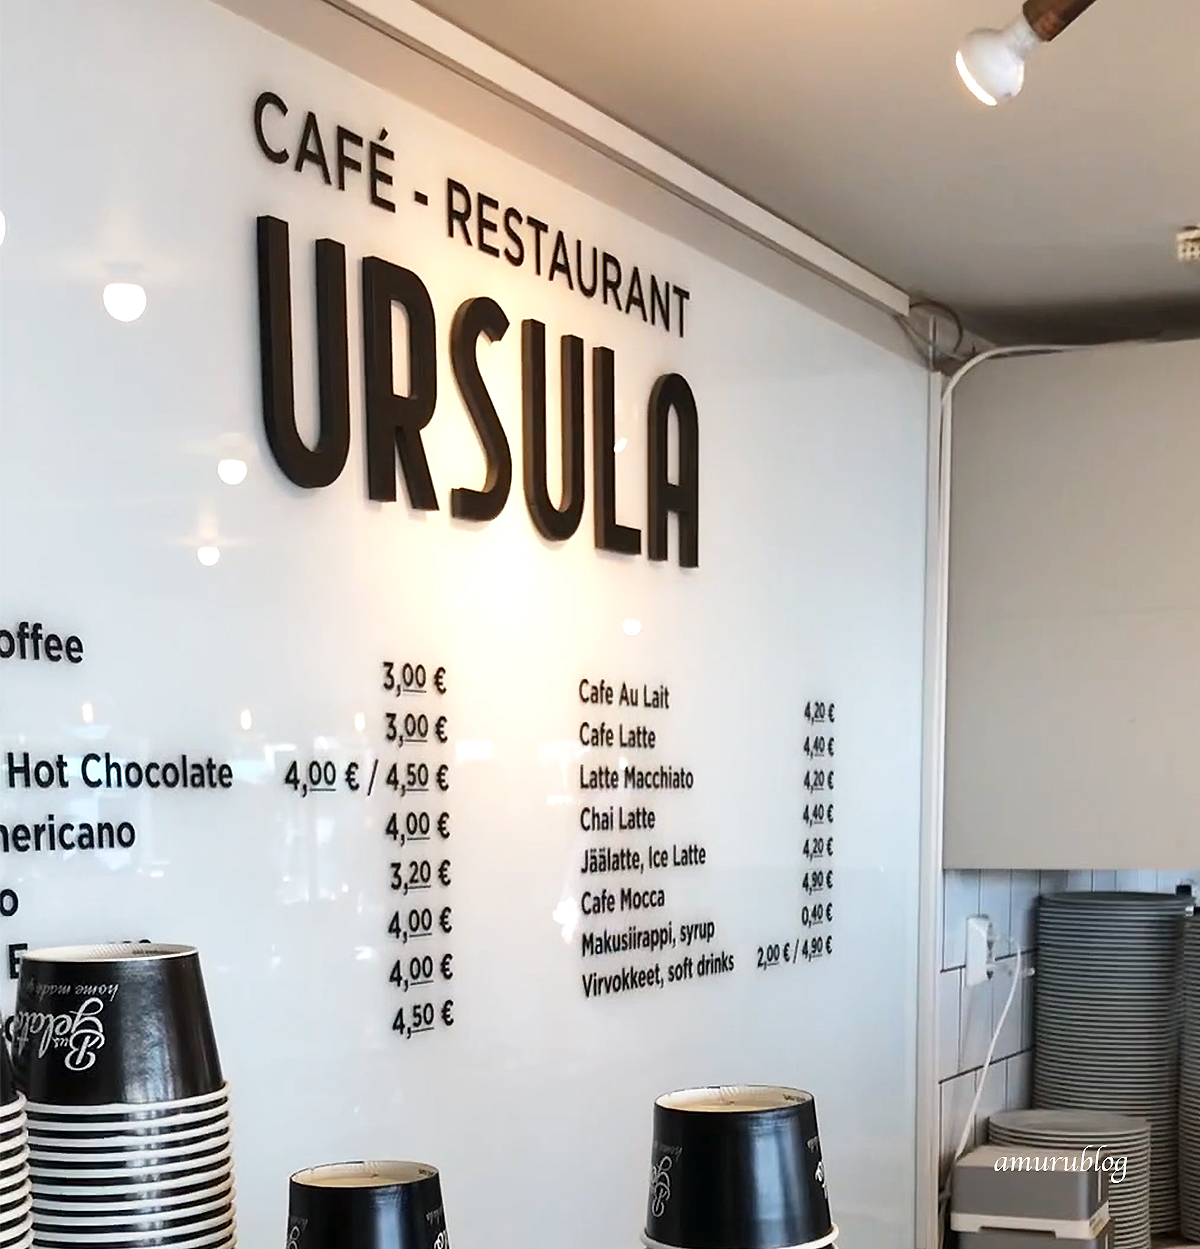 Café Ursula MENU